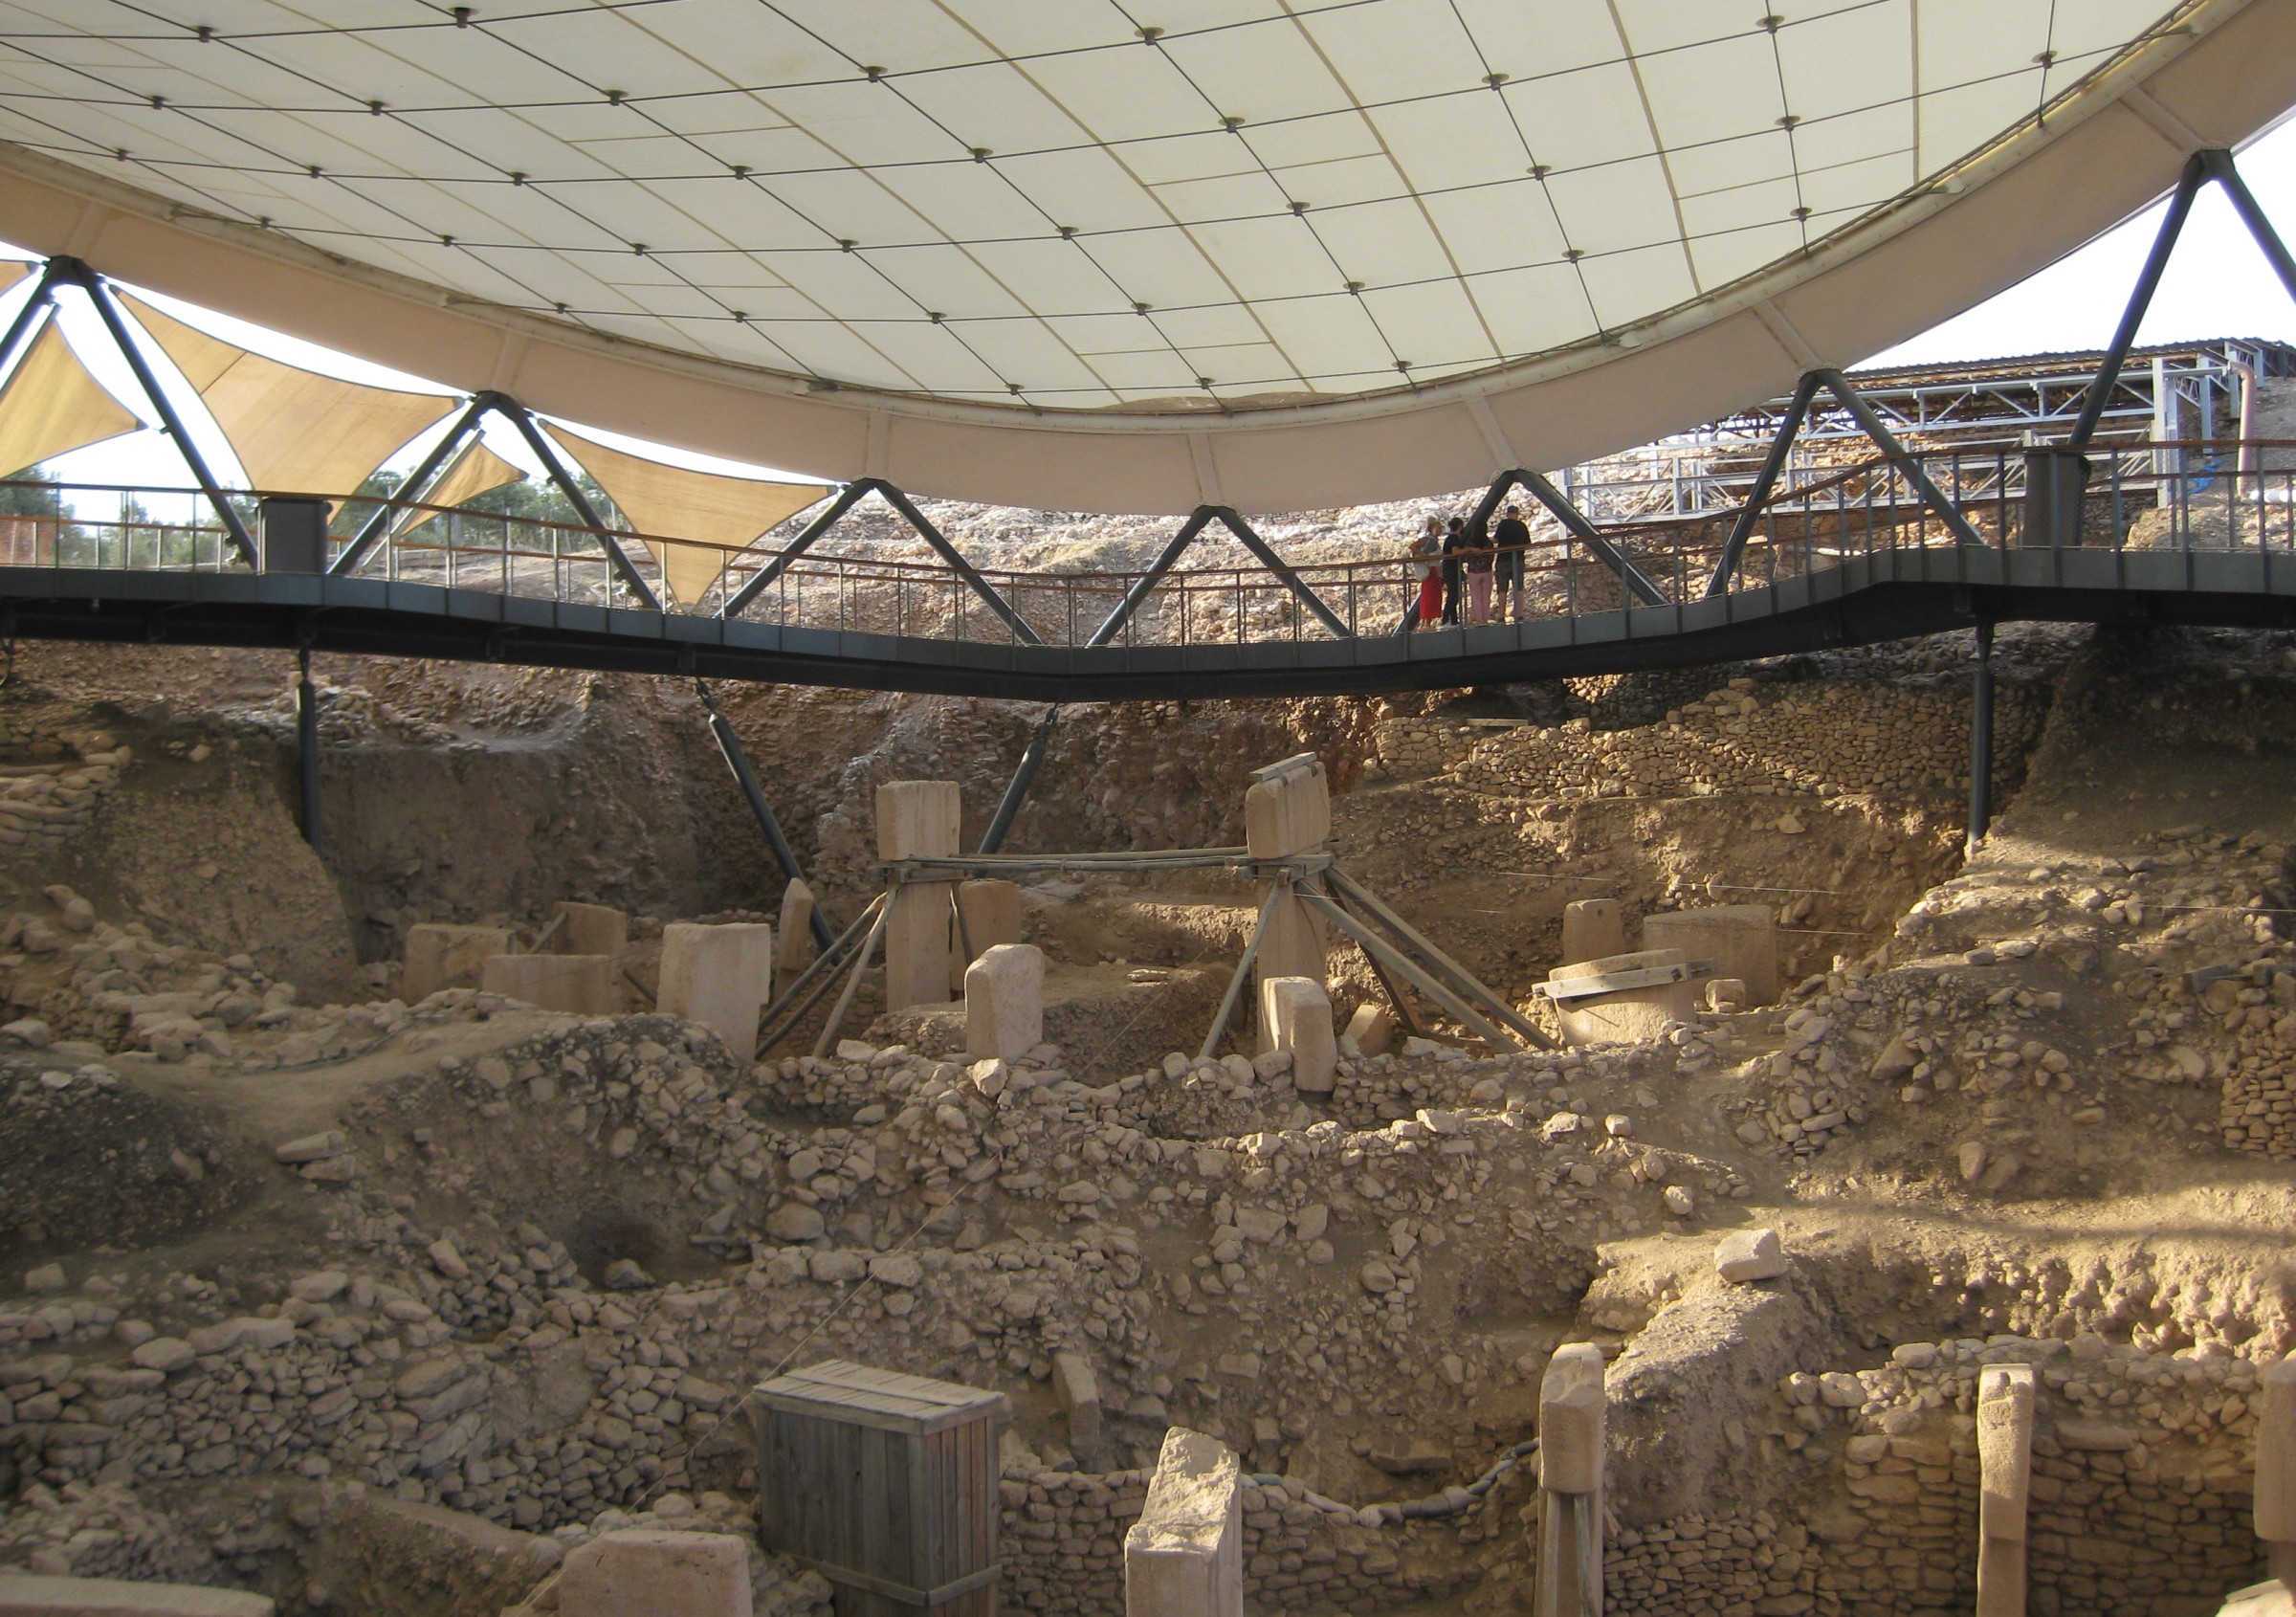 Besucher der Hauptgrabungsstätte Göbekli Tepe unter einem Schutzdach